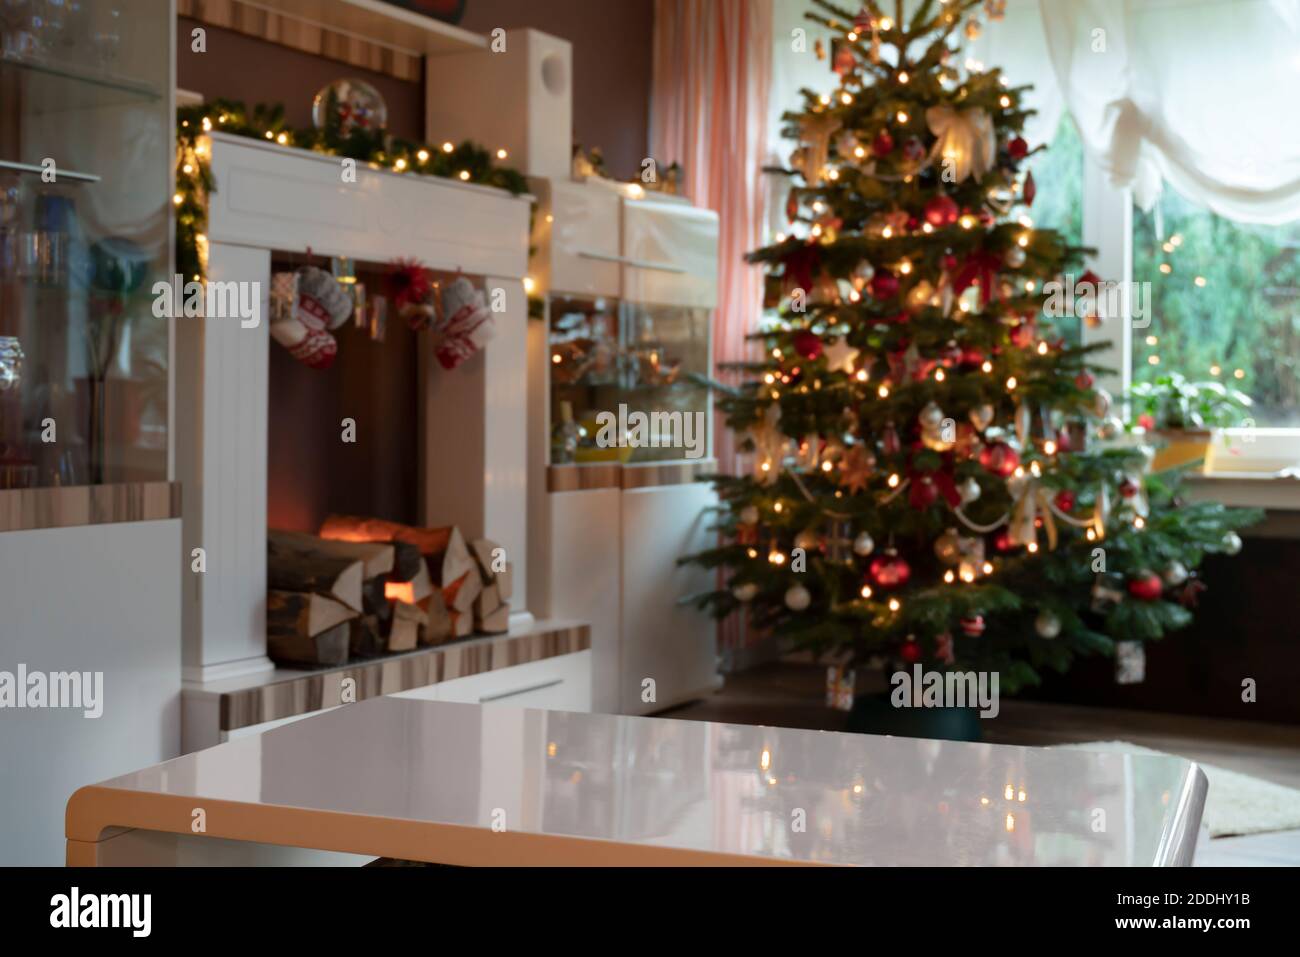 Vorlage von festlich dekorierten Wohnzimmer zu Weihnachten. Kamin und Weihnachtsbaum sind aus dem Fokus. Im Vordergrund befindet sich eine leere weiße Tabelle Stockfoto